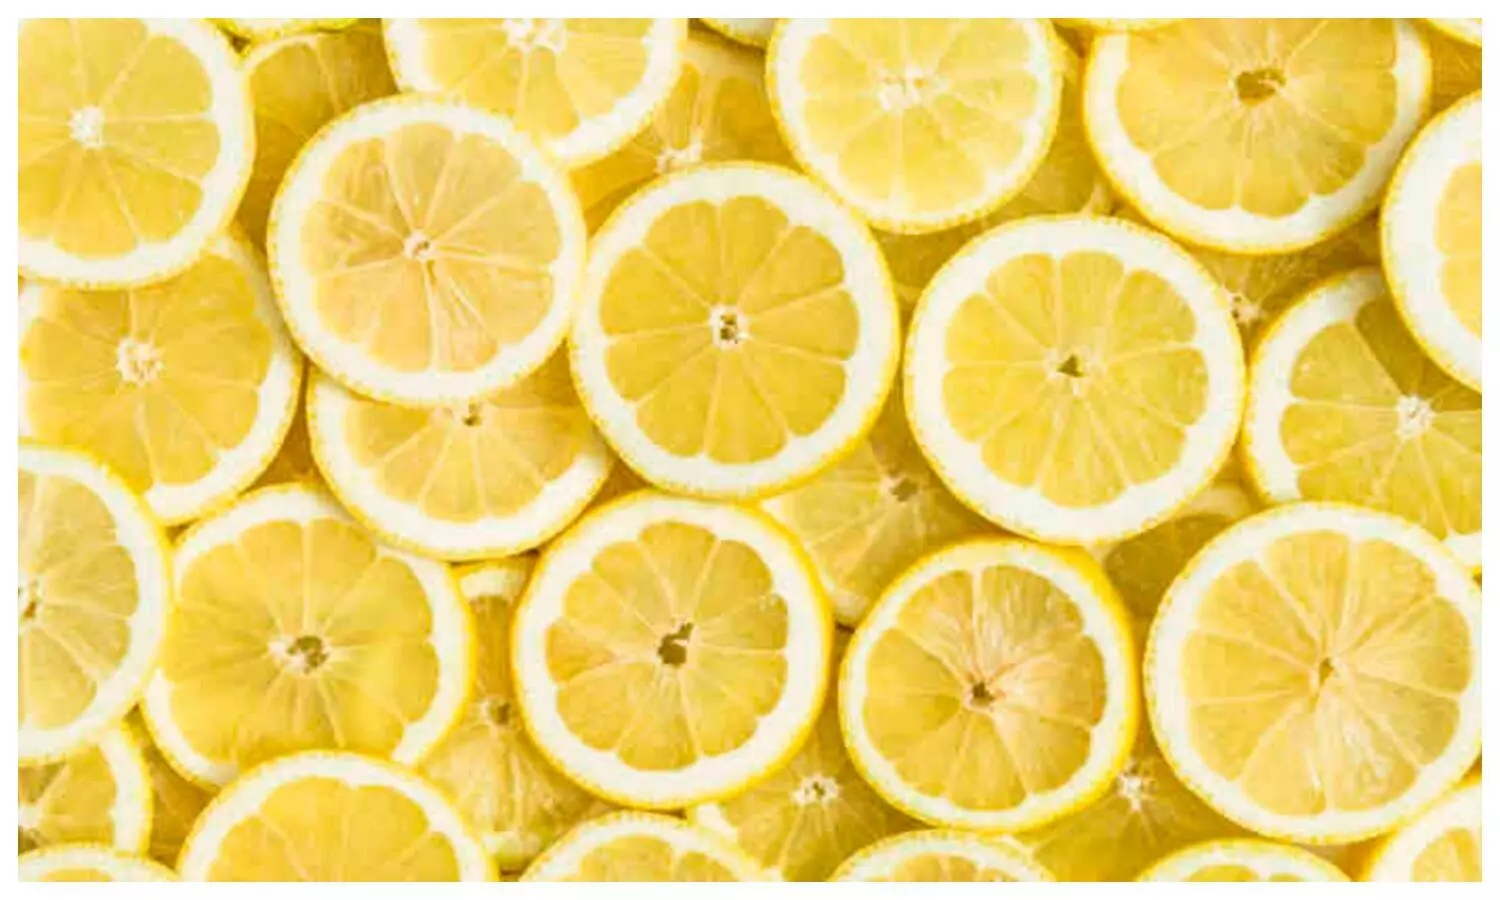 31 Varieties of Juicy Lemons